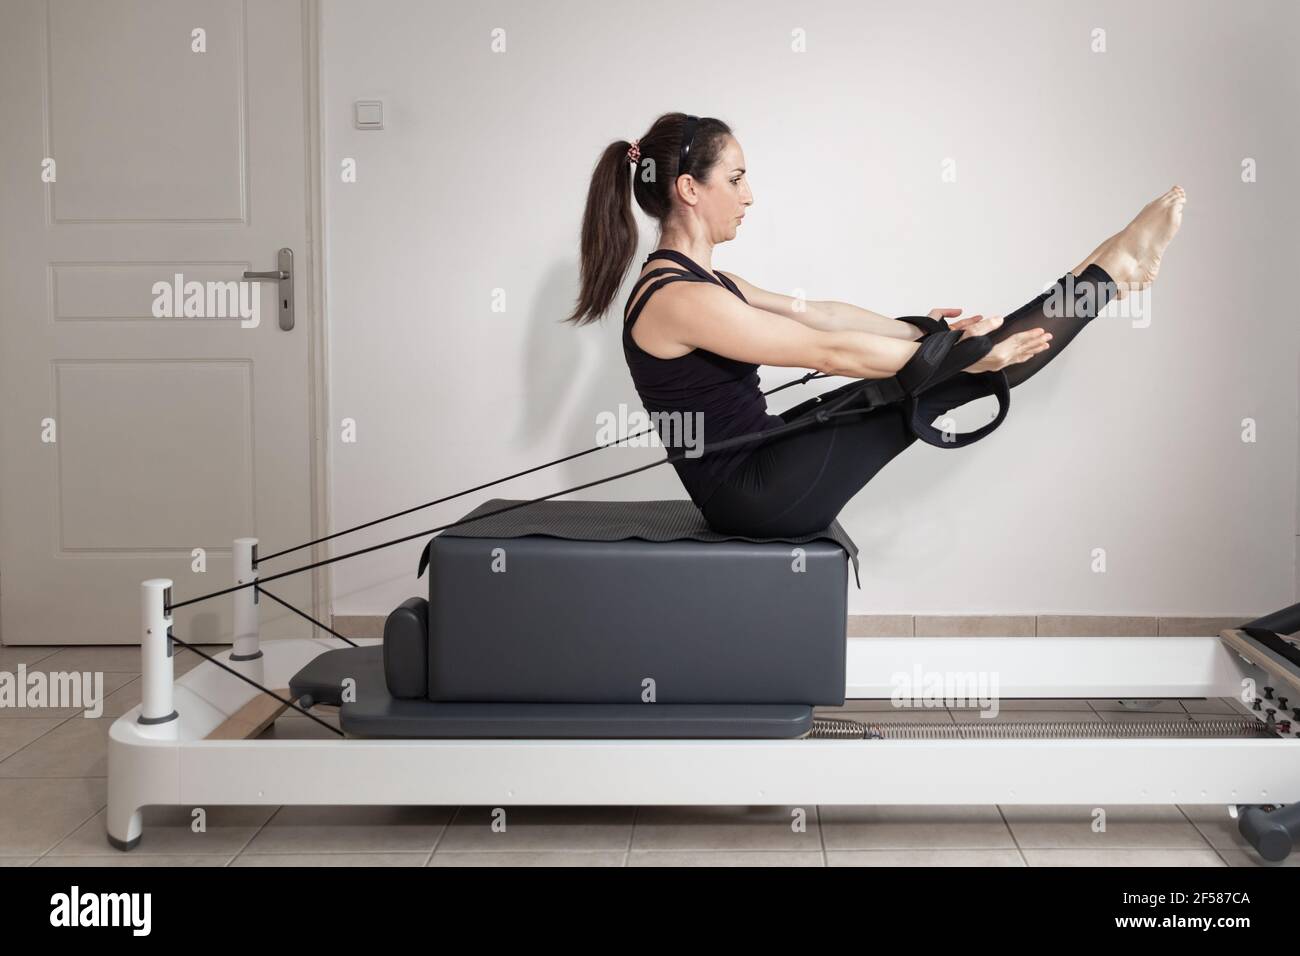 https://c8.alamy.com/compes/2f587ca/una-mujer-haciendo-ejercicios-de-pilates-en-una-cama-reformada-2f587ca.jpg